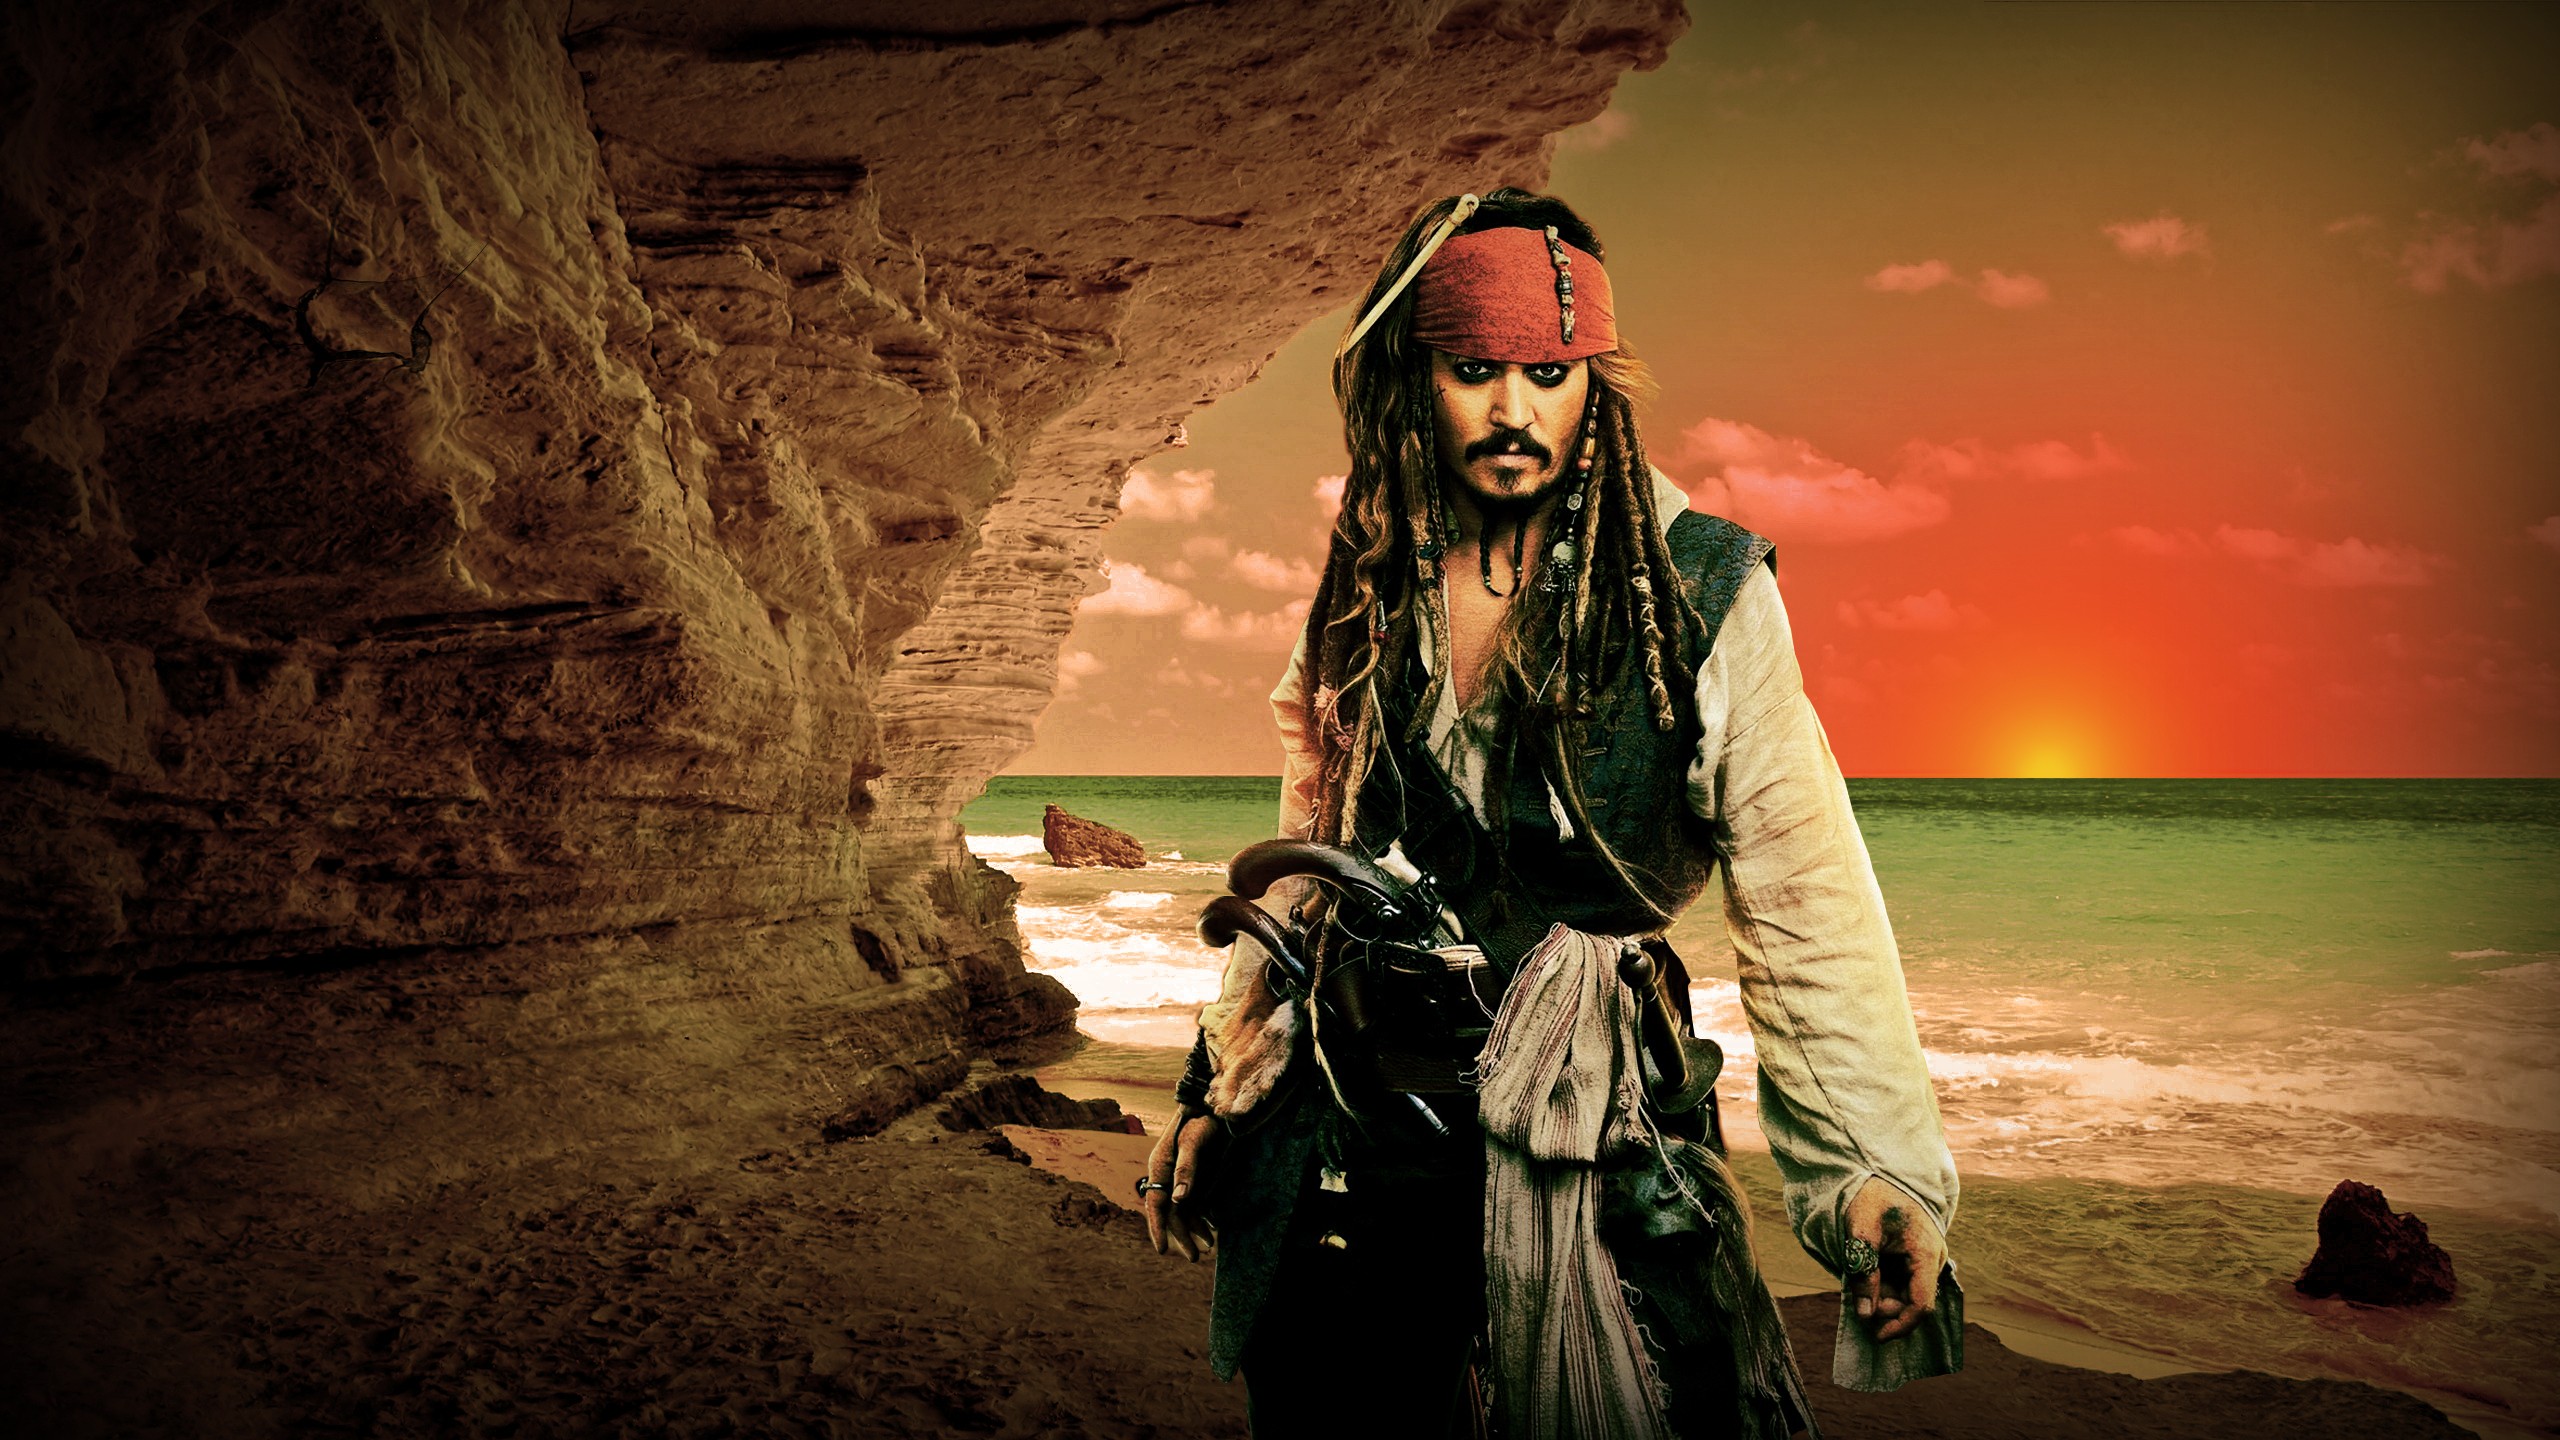 Descargar fondos de escritorio de Piratas Del Caribe HD